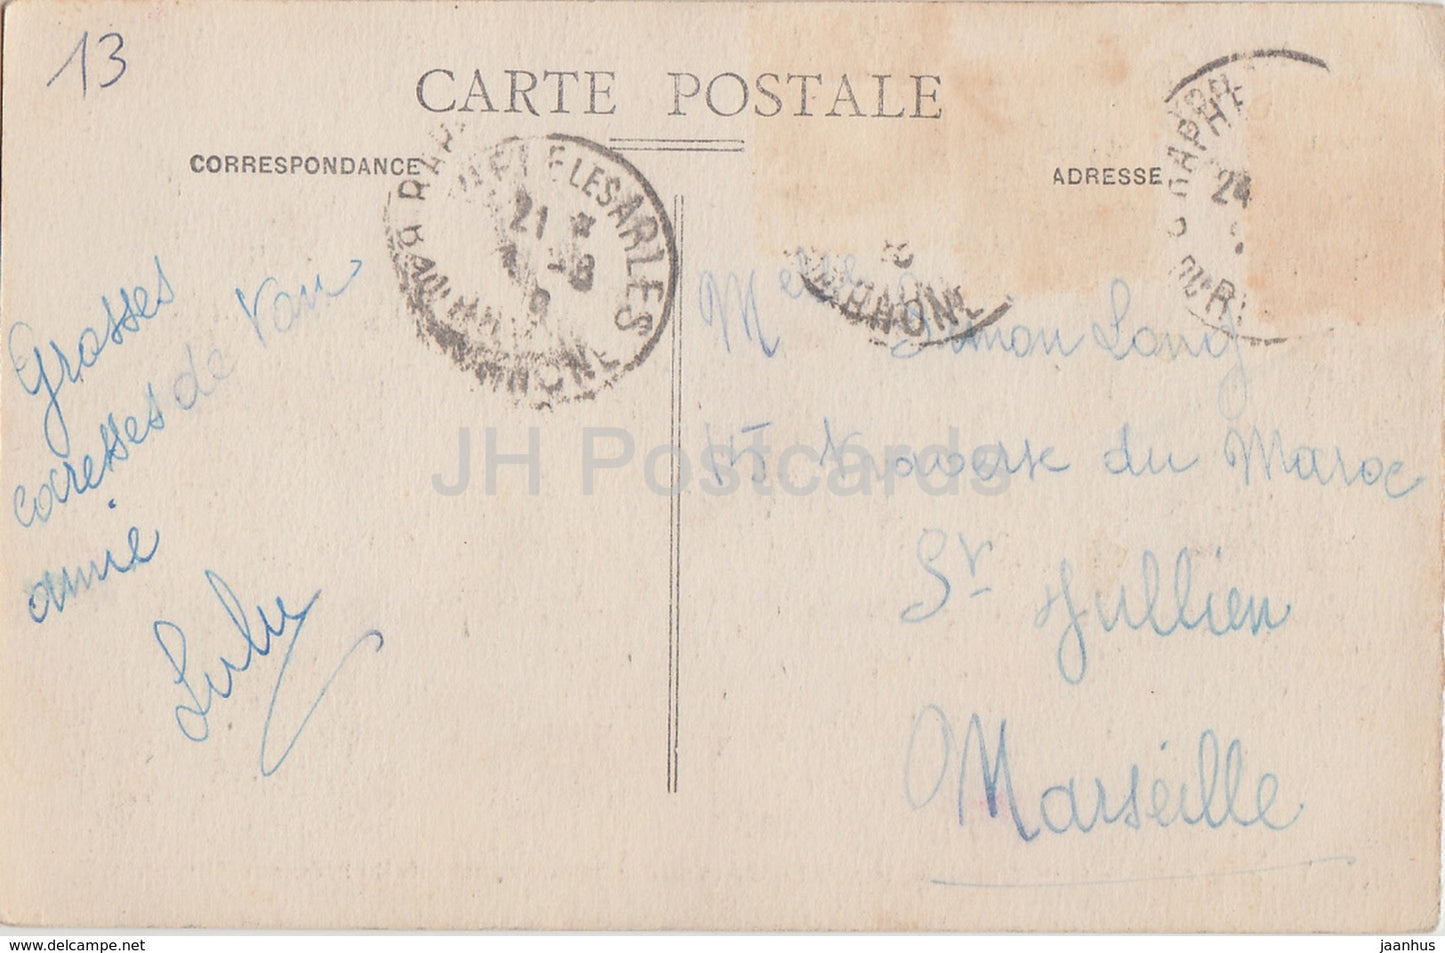 Arles - Façade de la Cathédrale St Trophime - cathédrale - 91 - carte postale ancienne - France - occasion